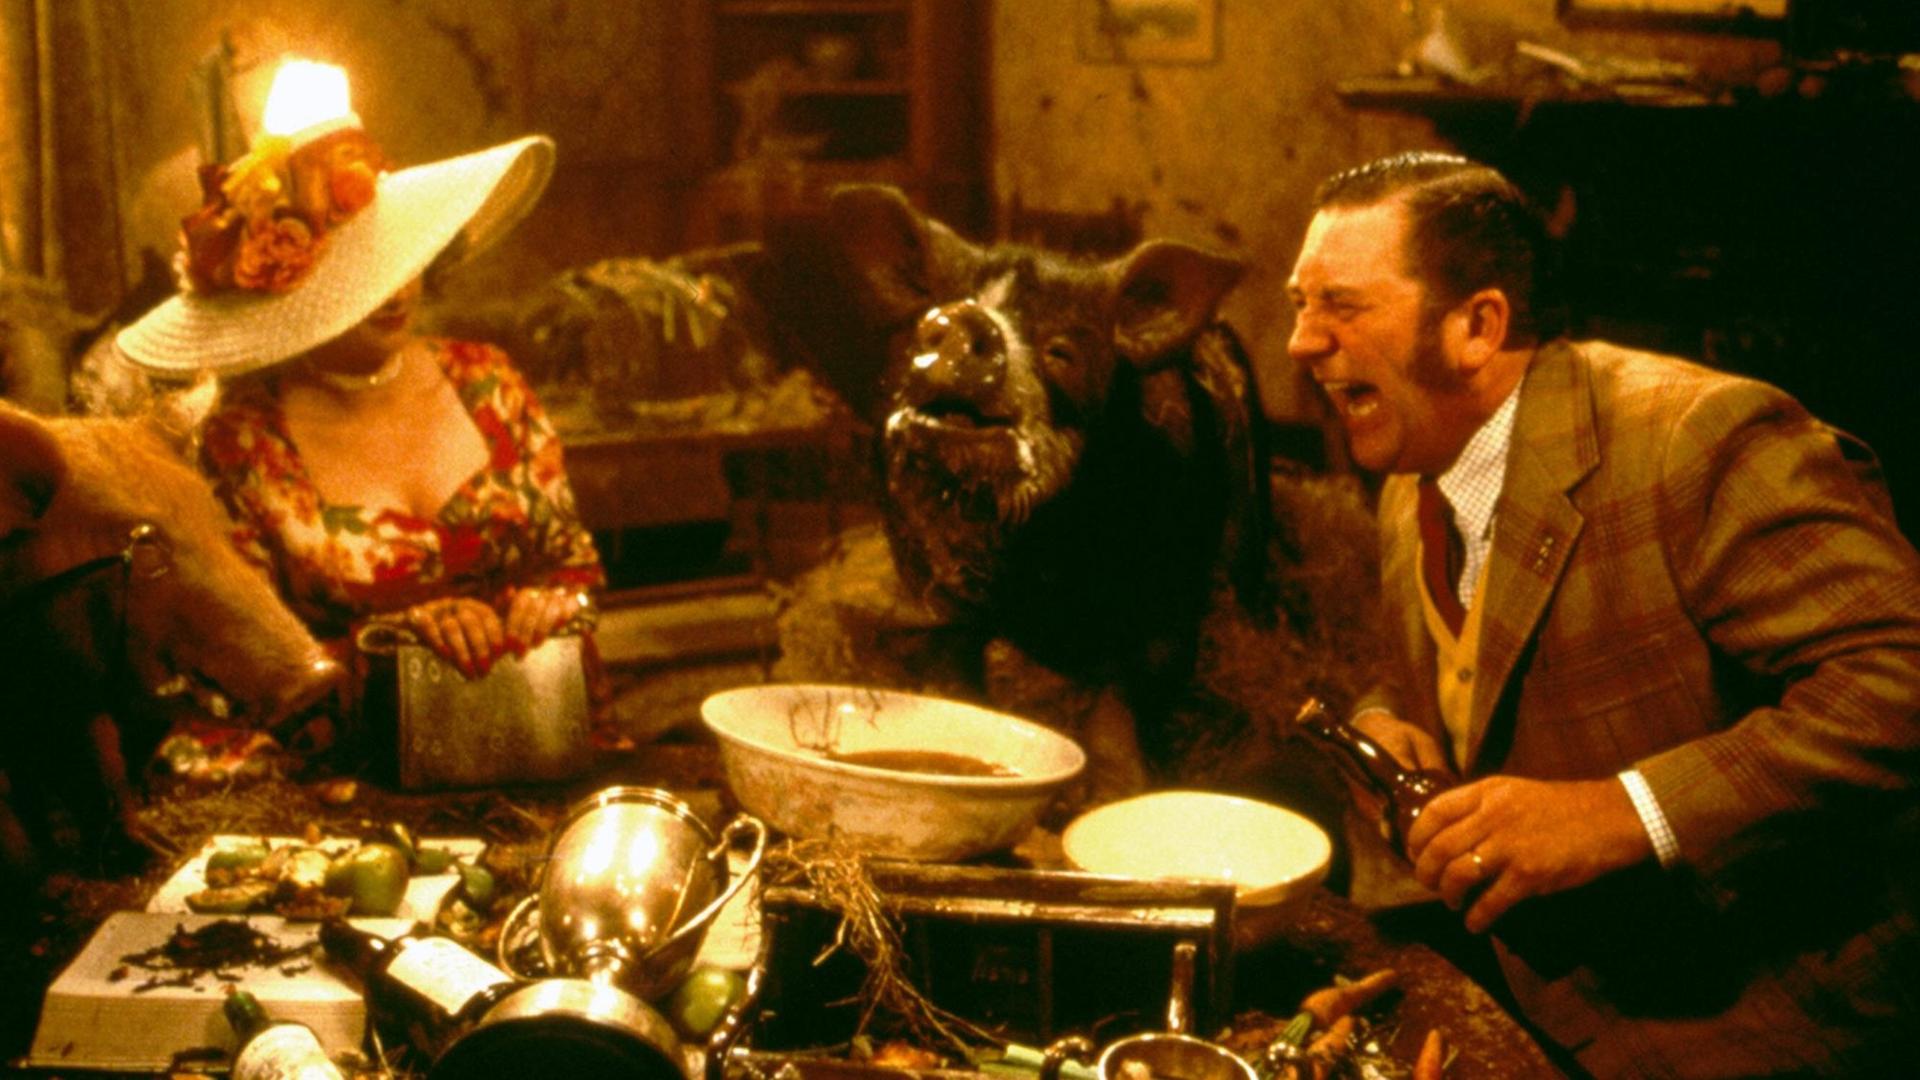 Szene aus dem Film "Animal Farm" von John Stephenson. Eine Frau, ein Schwein und ein Mann sitzen an einem Tisch vollgepackt mit Gegenständen.